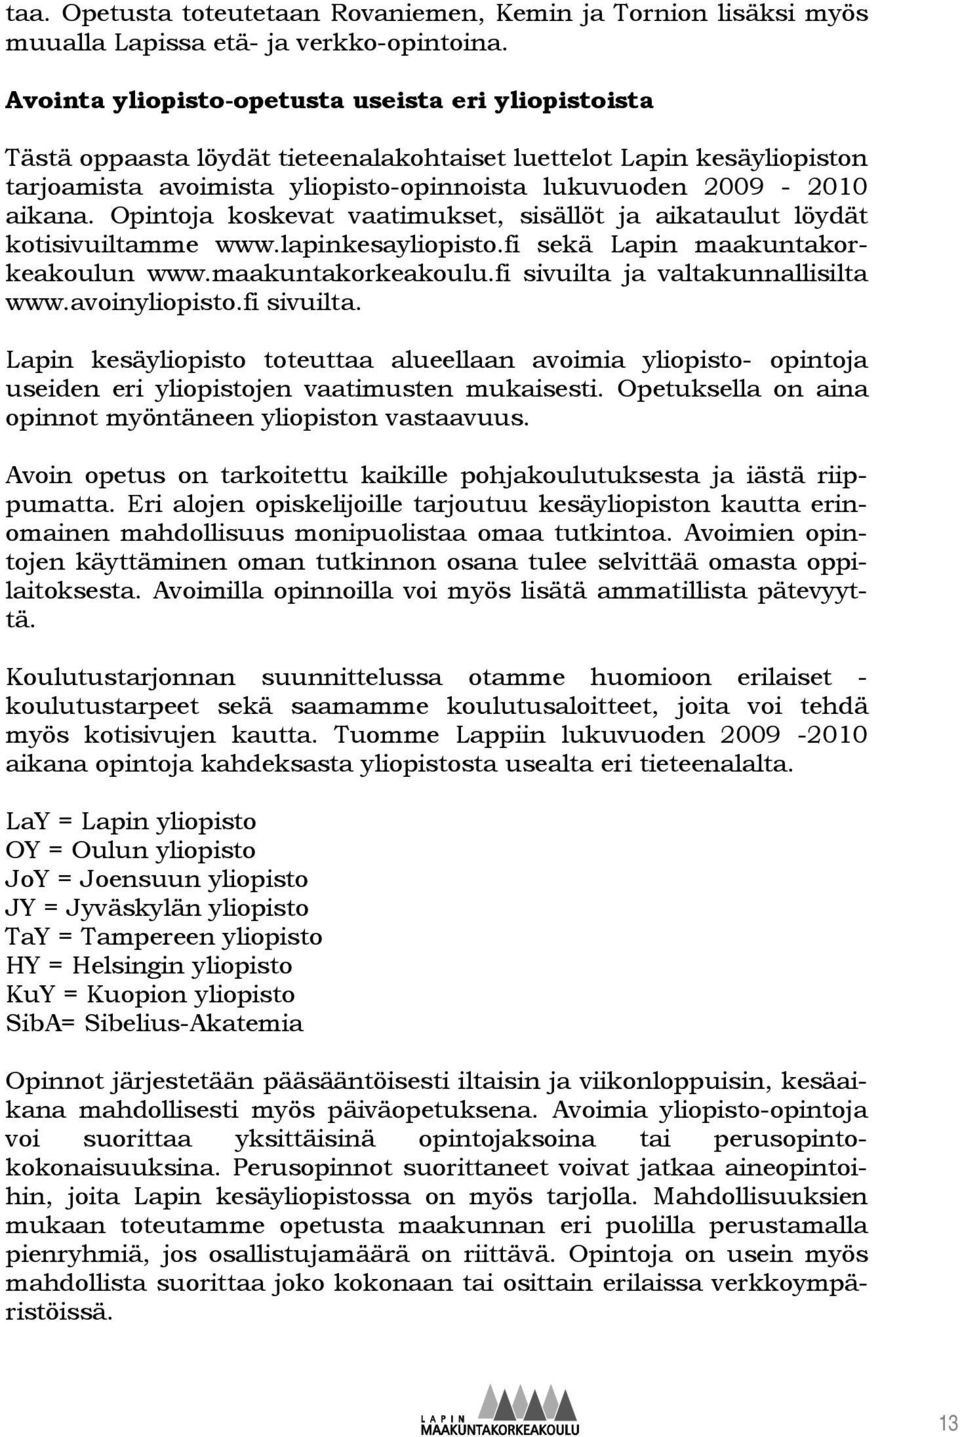 Opintoja koskevat vaatimukset, sisällöt ja aikataulut löydät kotisivuiltamme www.lapinkesayliopisto.fi sekä Lapin maakuntakorkeakoulun www.maakuntakorkeakoulu.fi sivuilta ja valtakunnallisilta www.